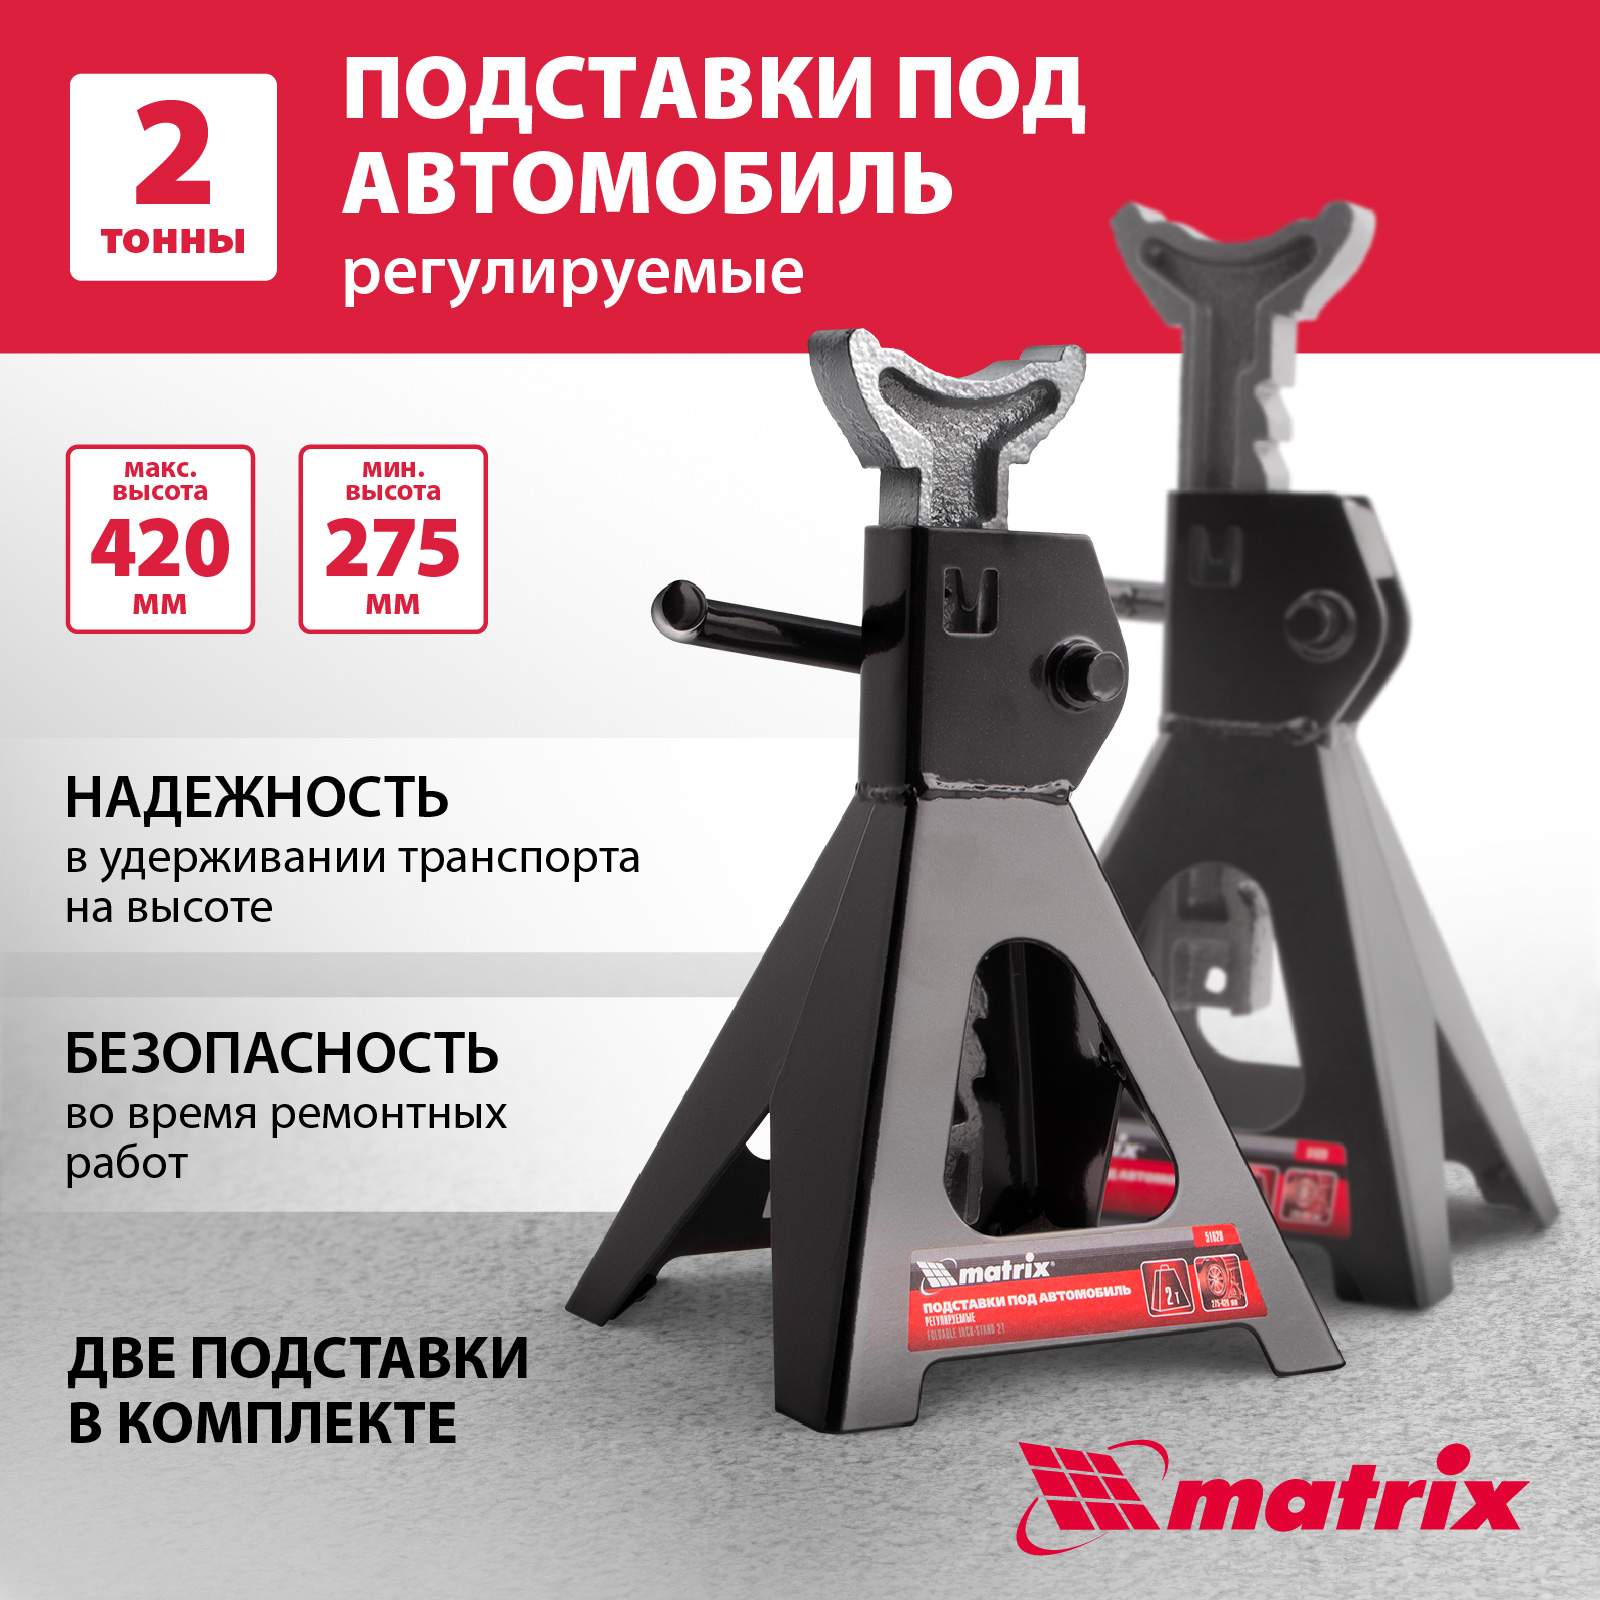 Подставки под автомобиль регулируемые Matrix 51620 2 т подъем 275-420 мм 2 шт - купить в Москве, цены на Мегамаркет